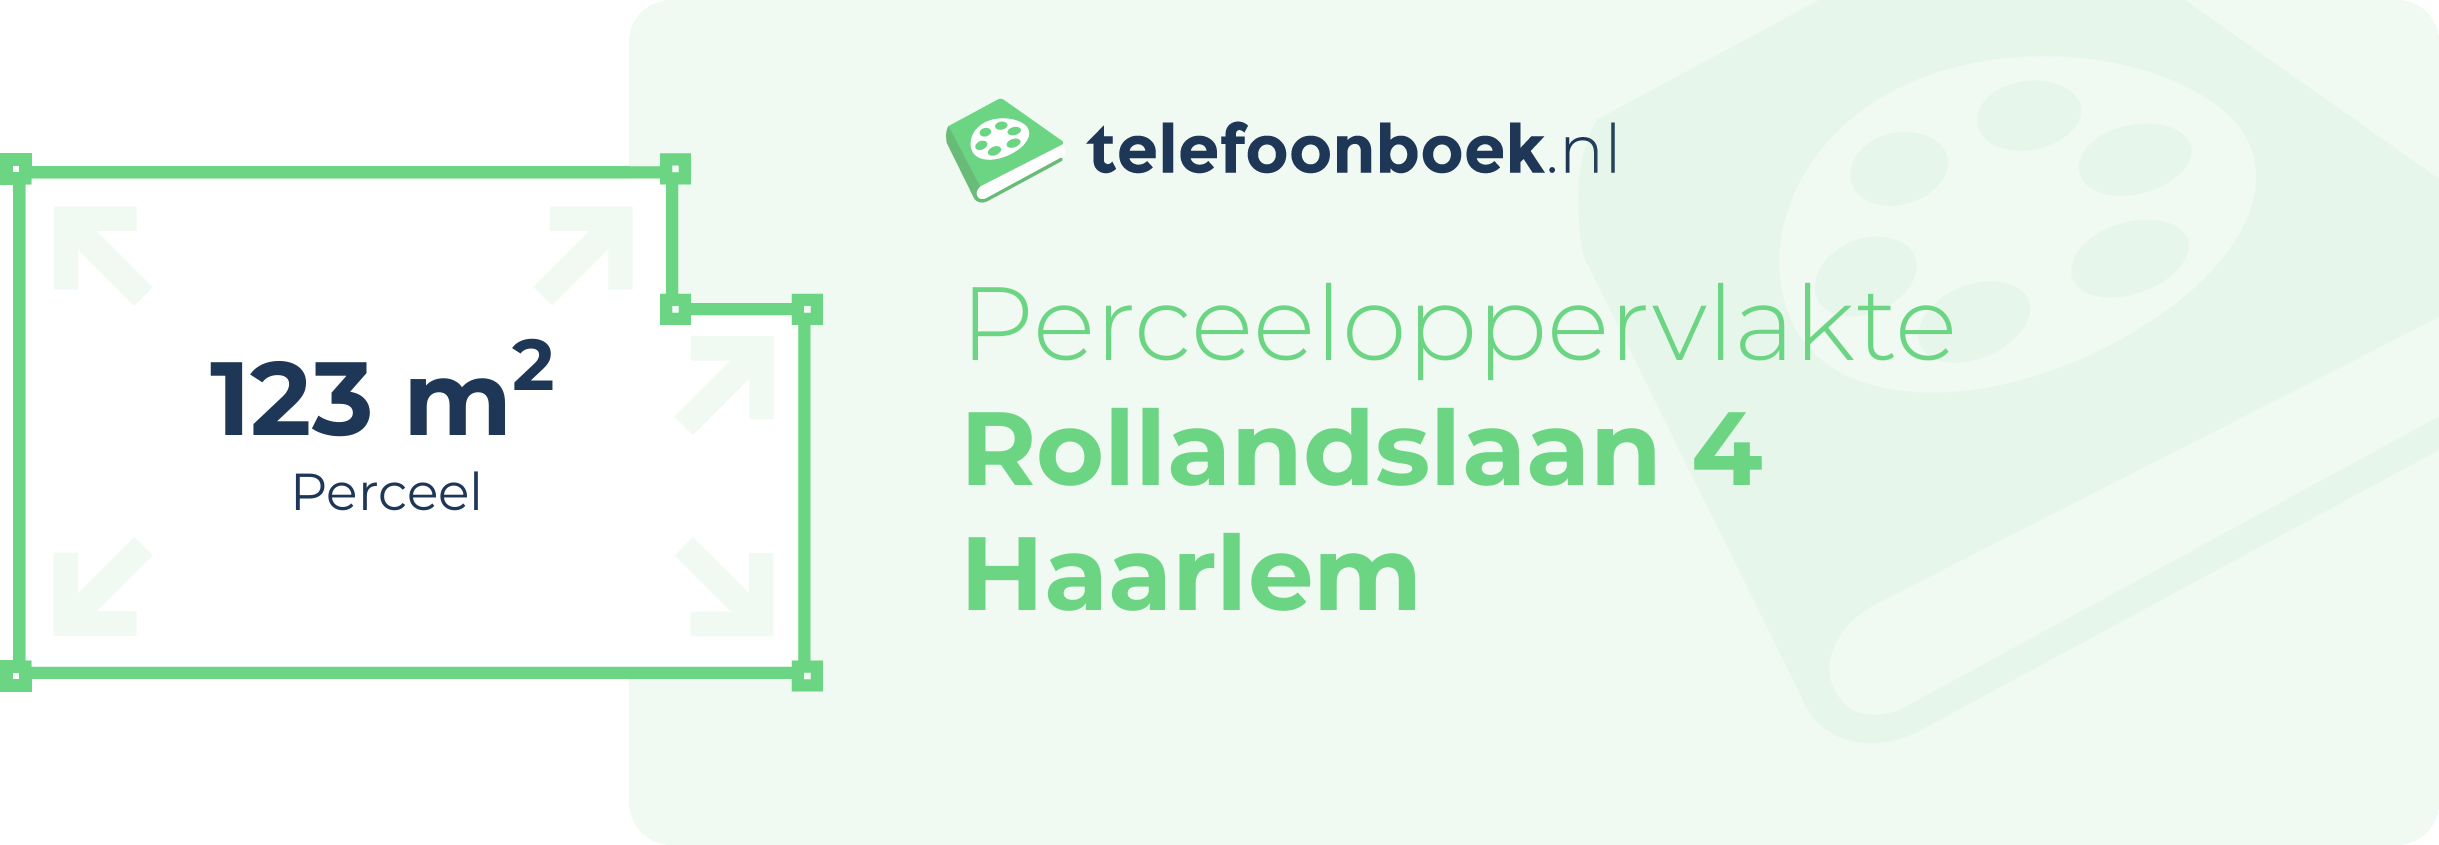 Perceeloppervlakte Rollandslaan 4 Haarlem